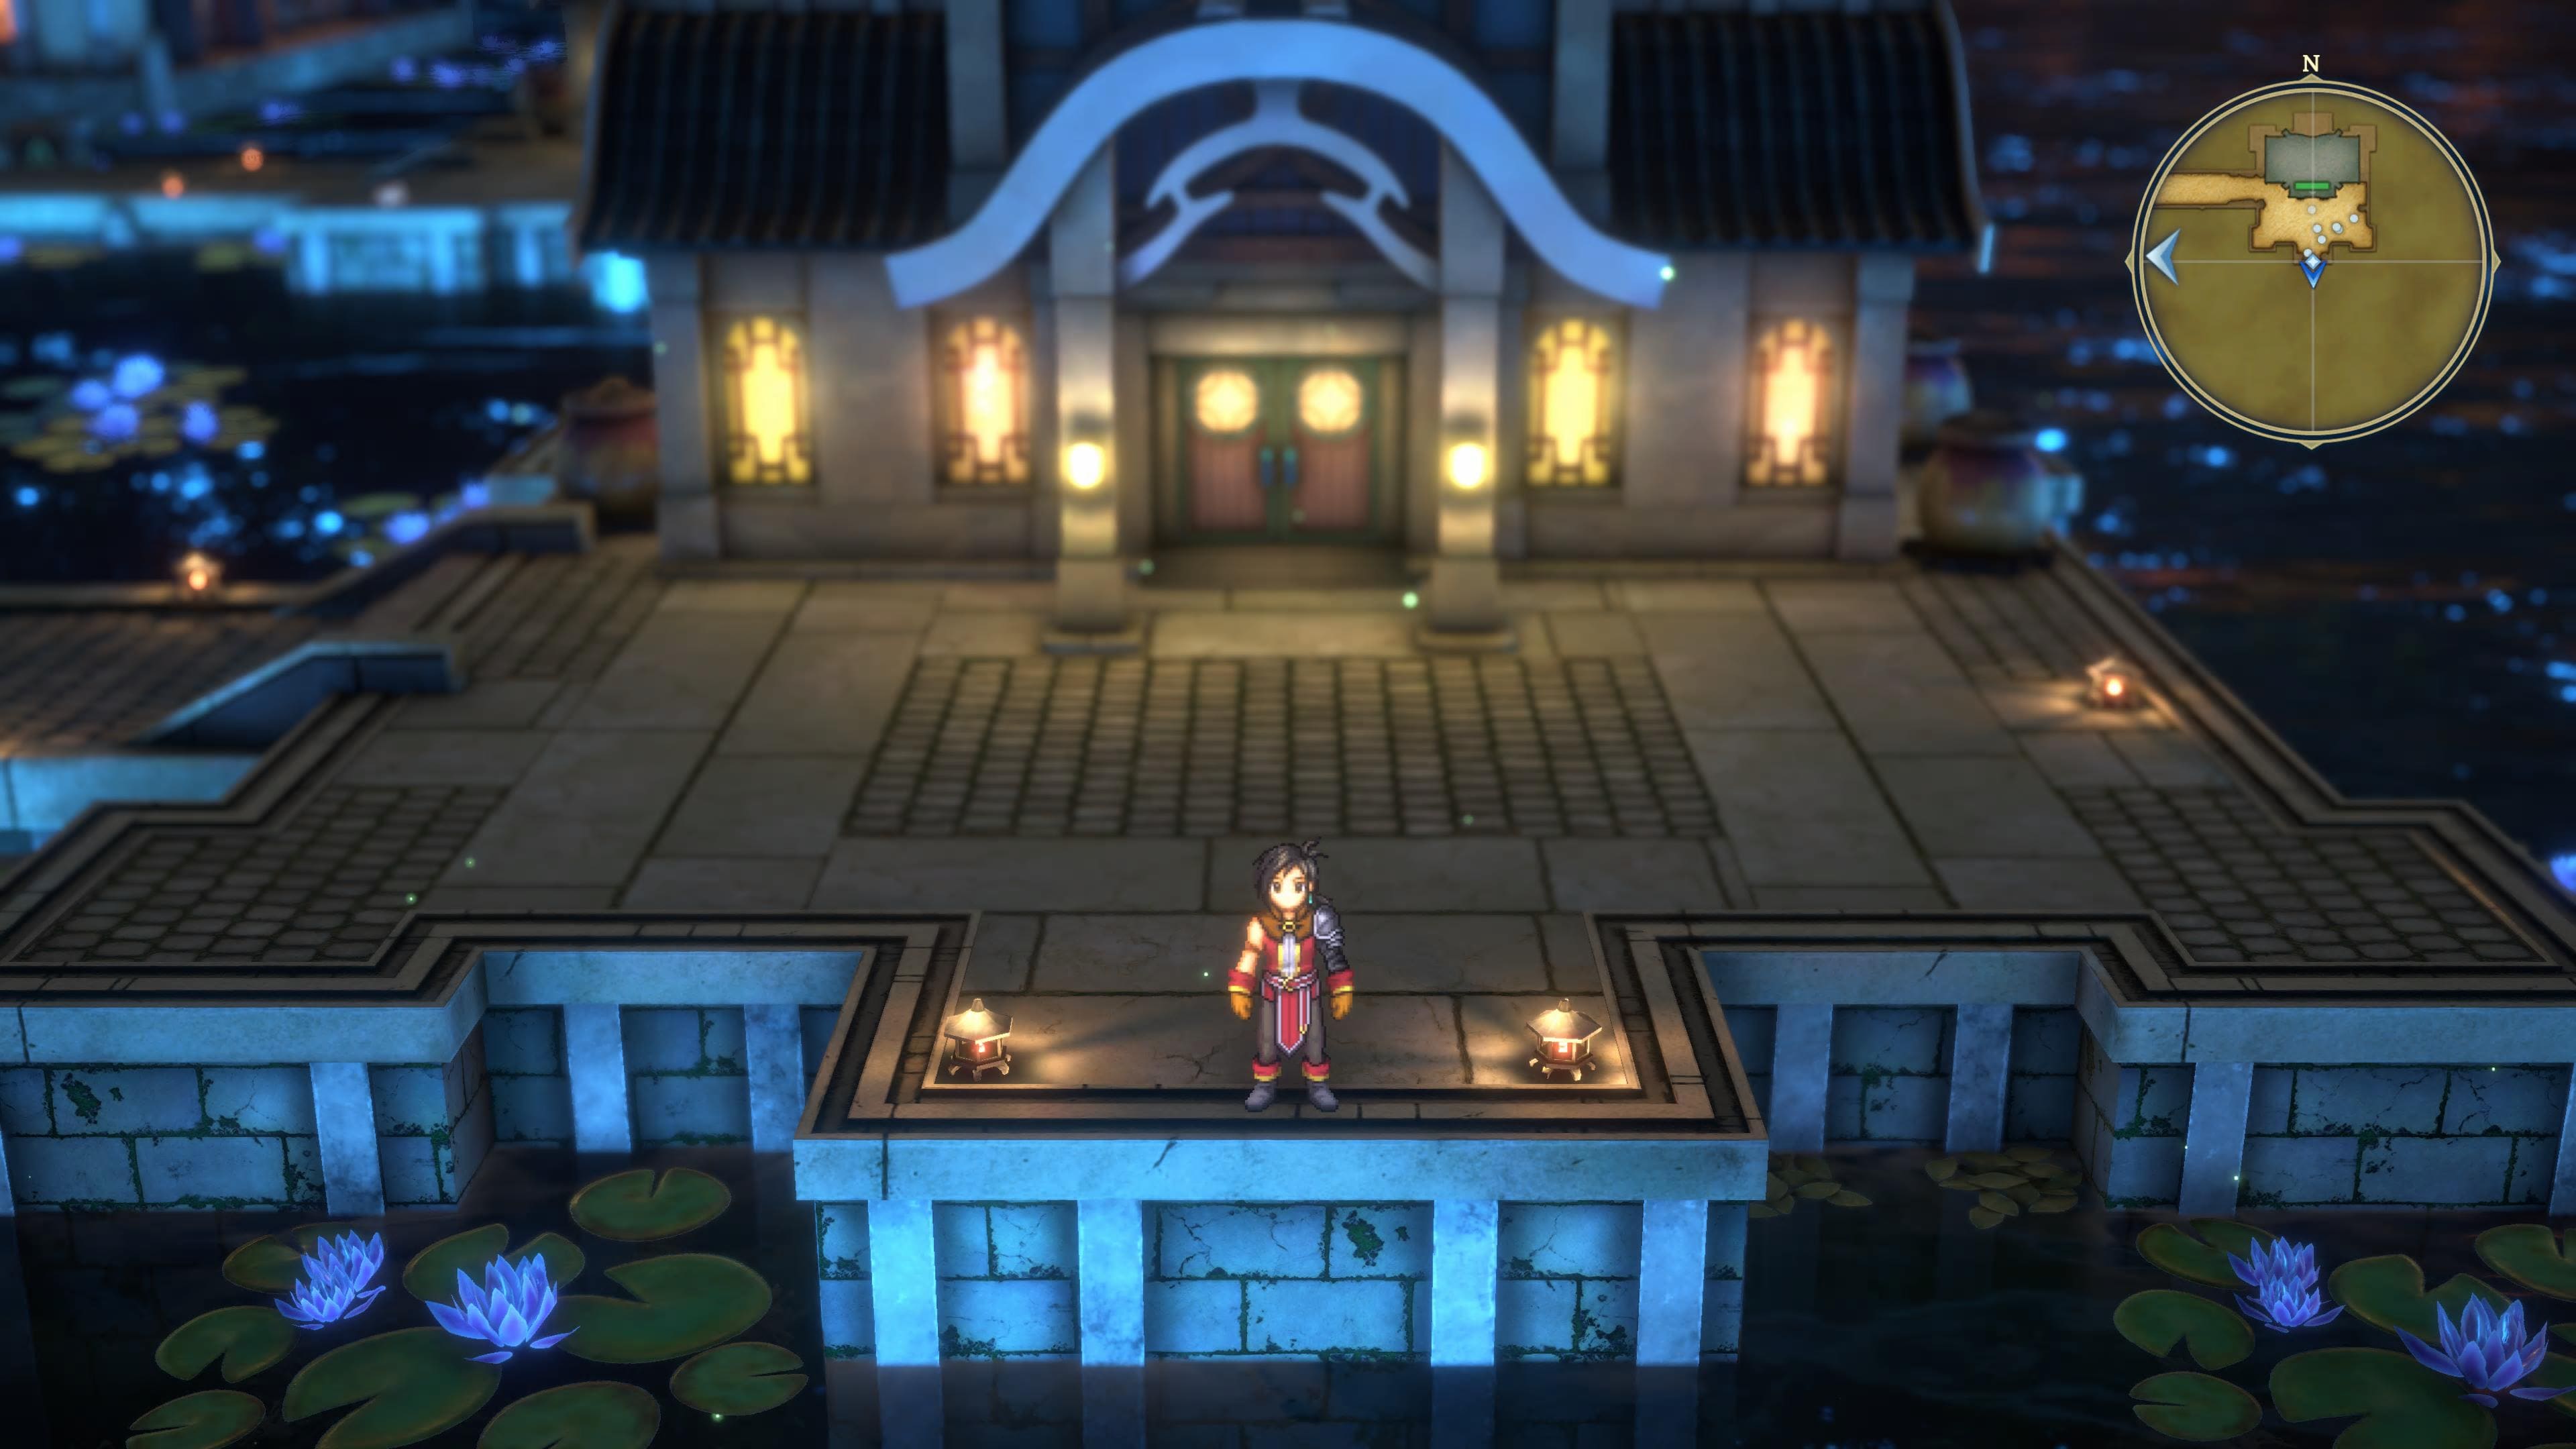 百英雄伝のゲーム画面。家の灯りがきらきらしている夜の街。